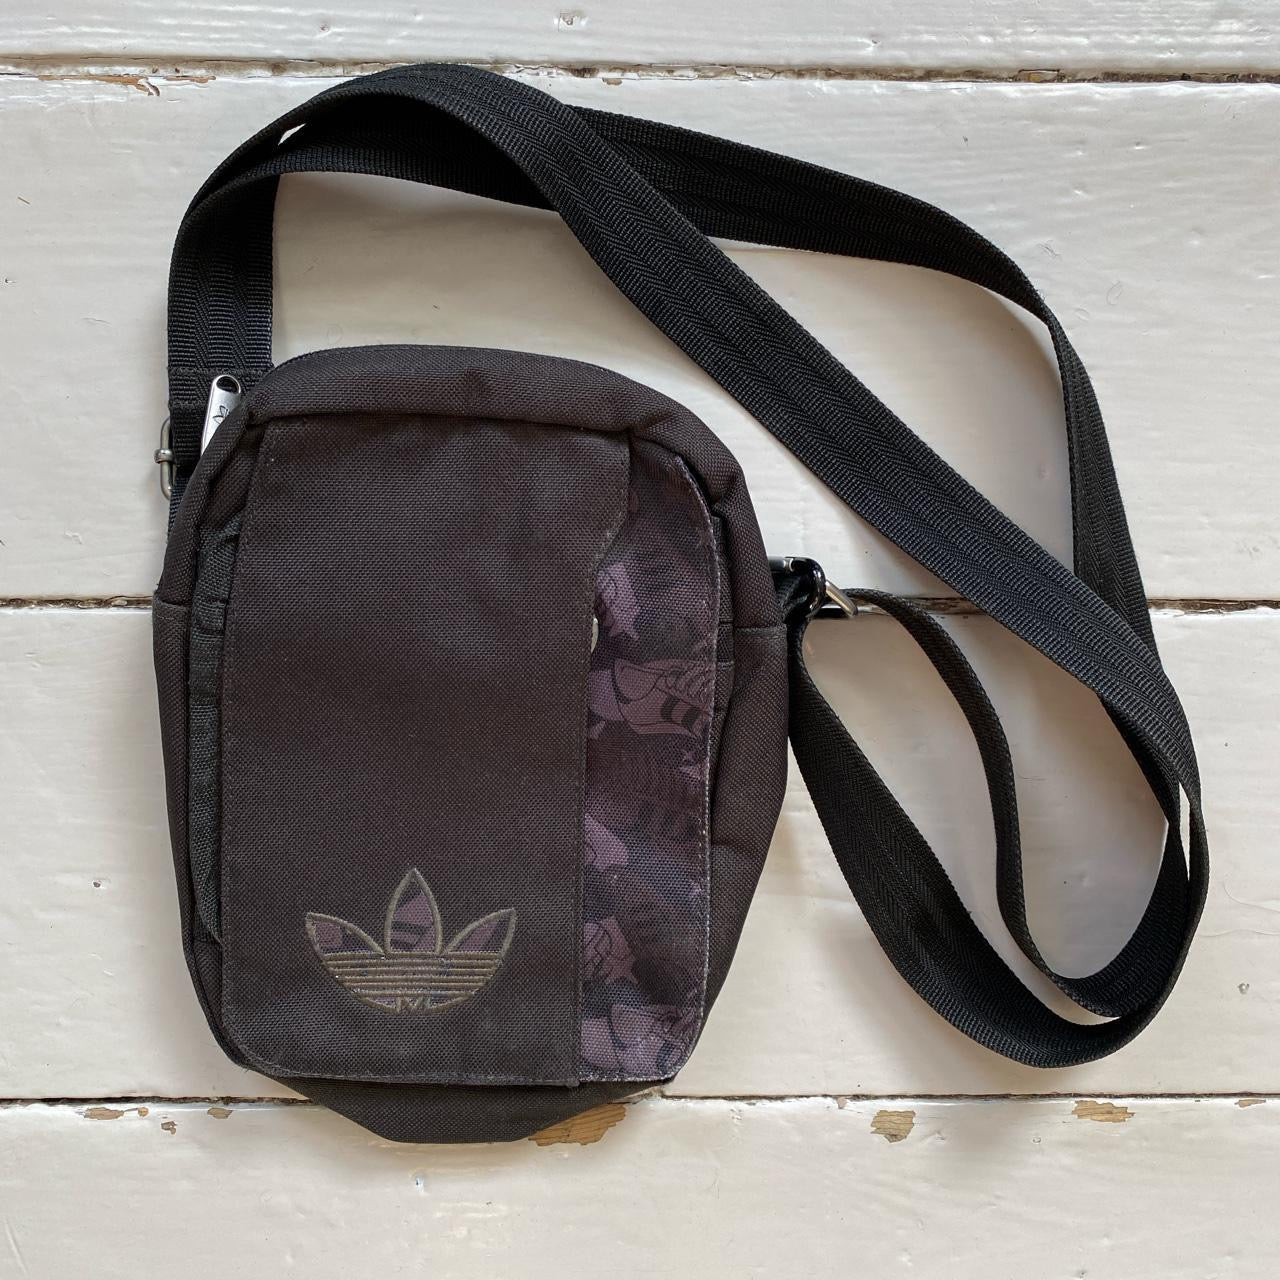 Adidas Originals Pouch Bag